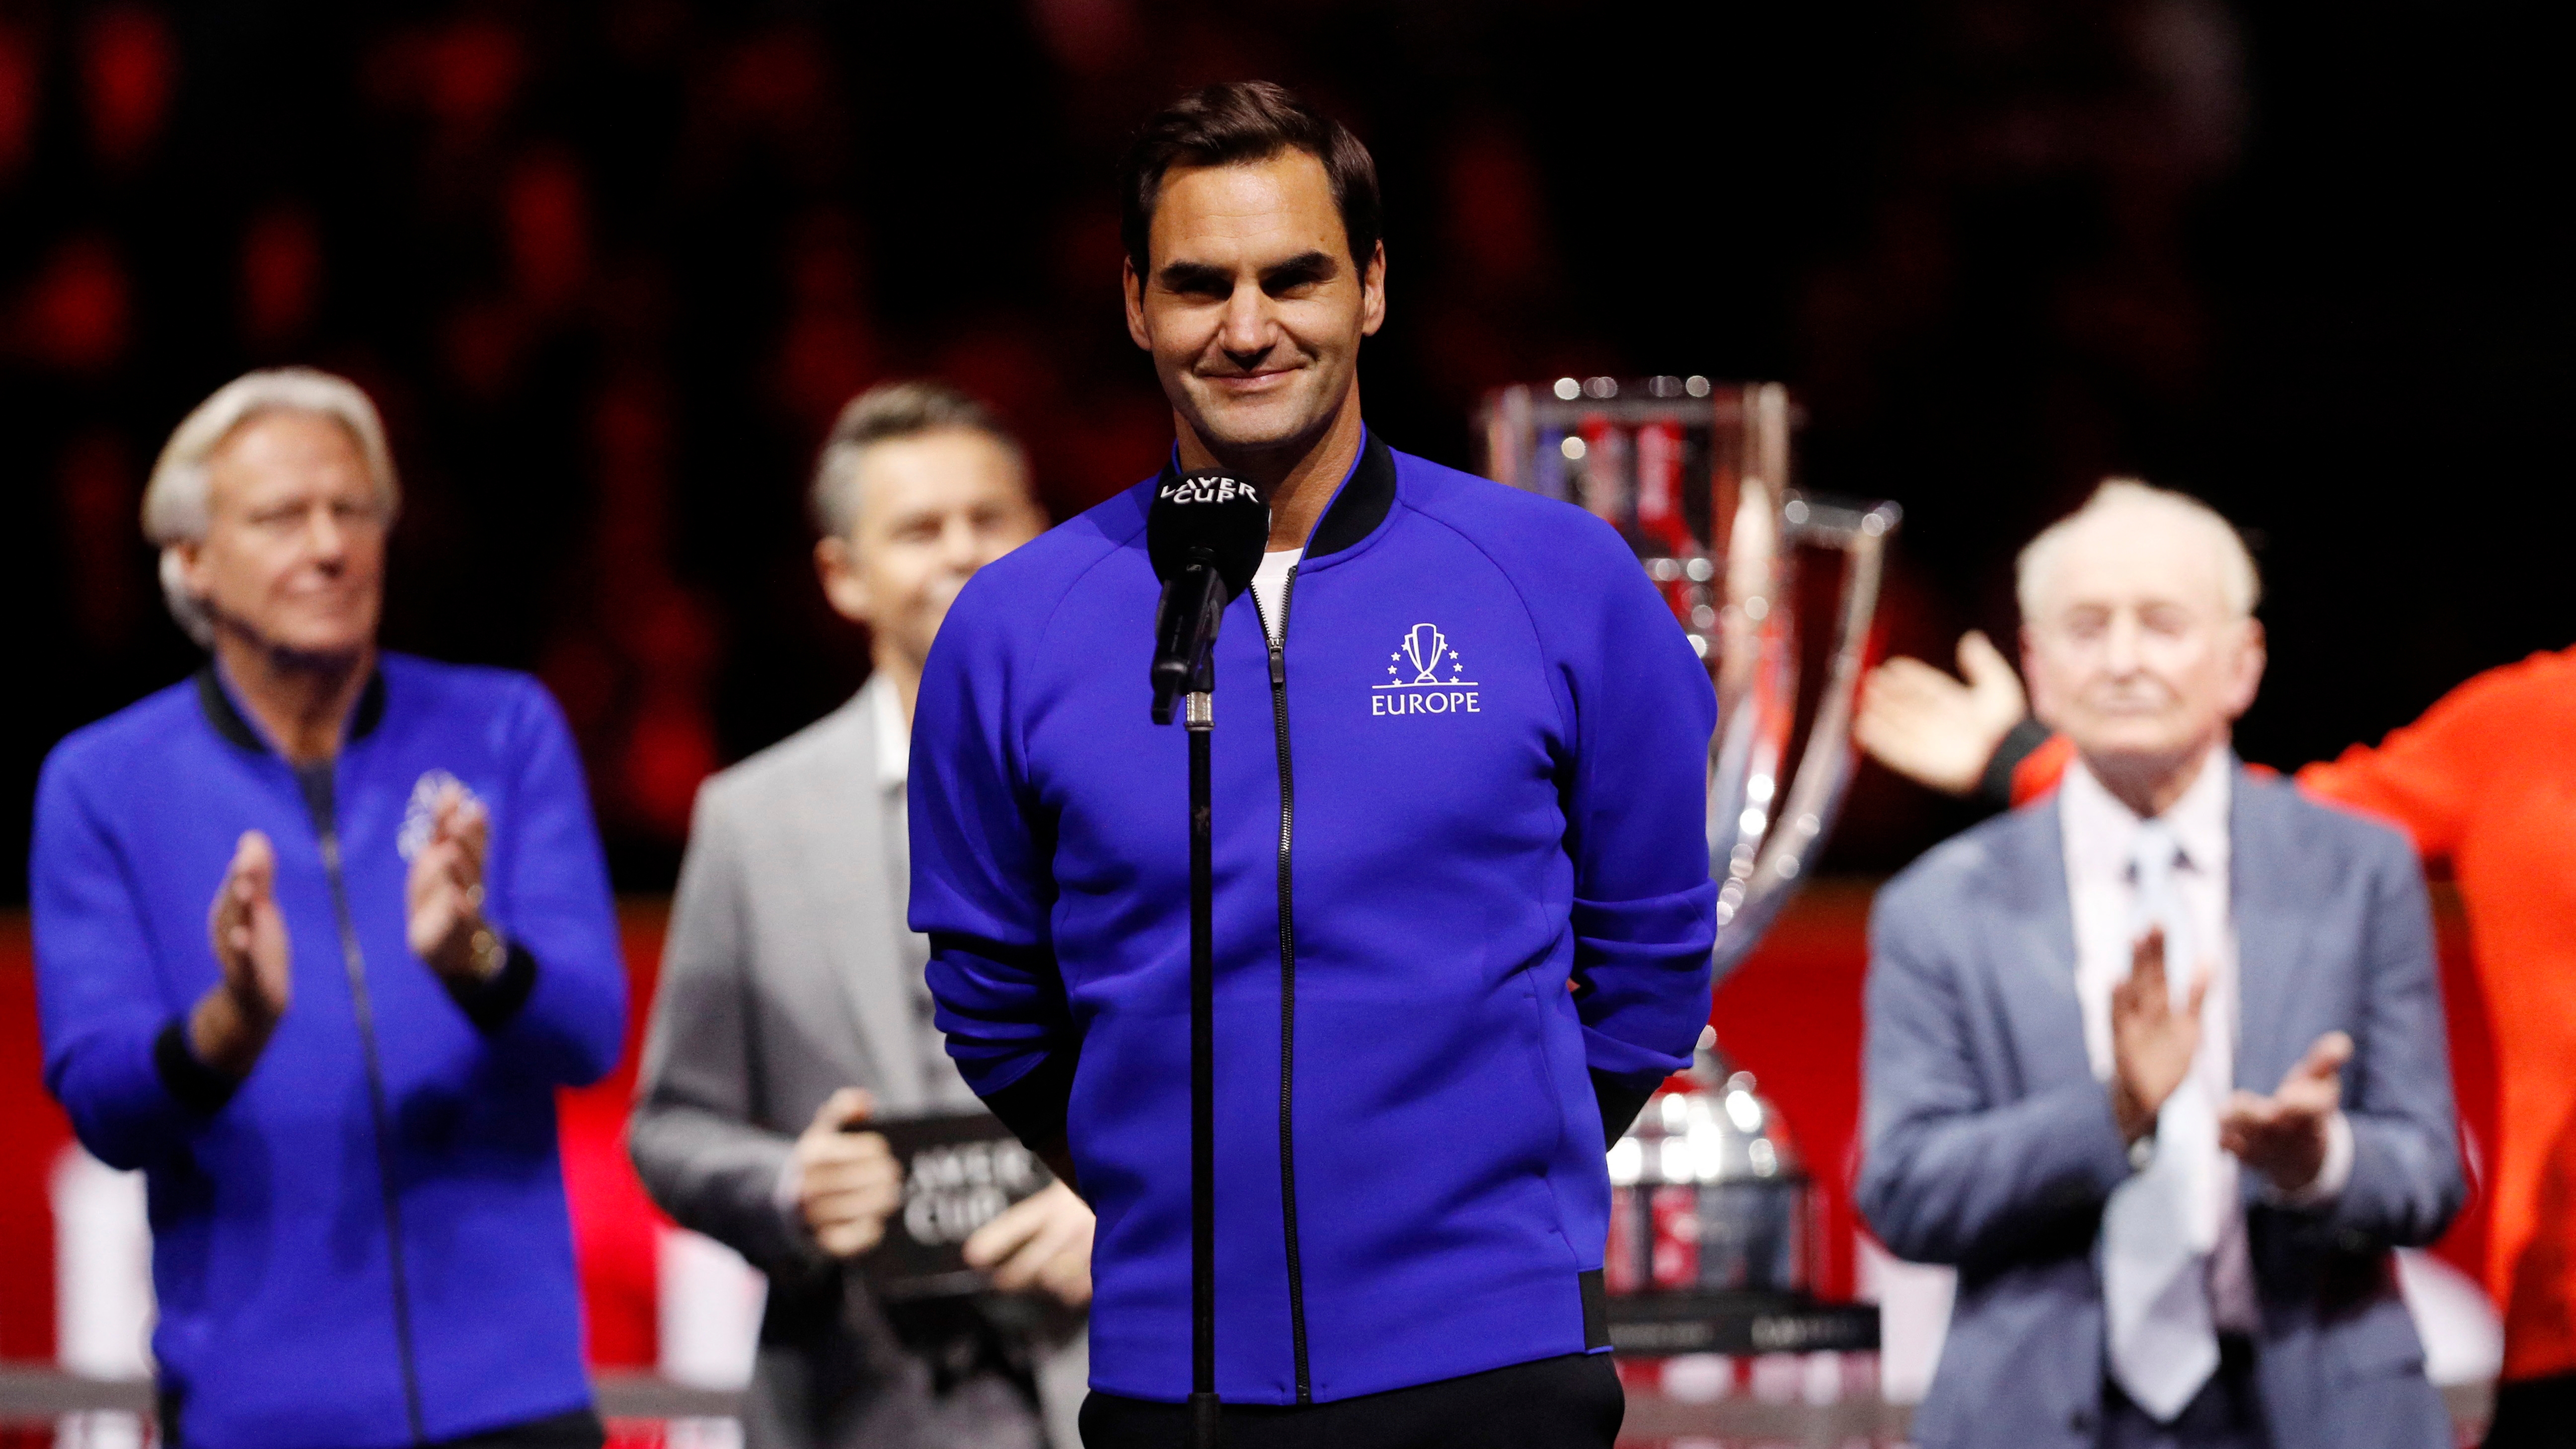 El discurso completo de Roger Federer en el cierre de la Laver Cup que marcó su retiro del tenis: “No sabía que iba a tener que hablar”